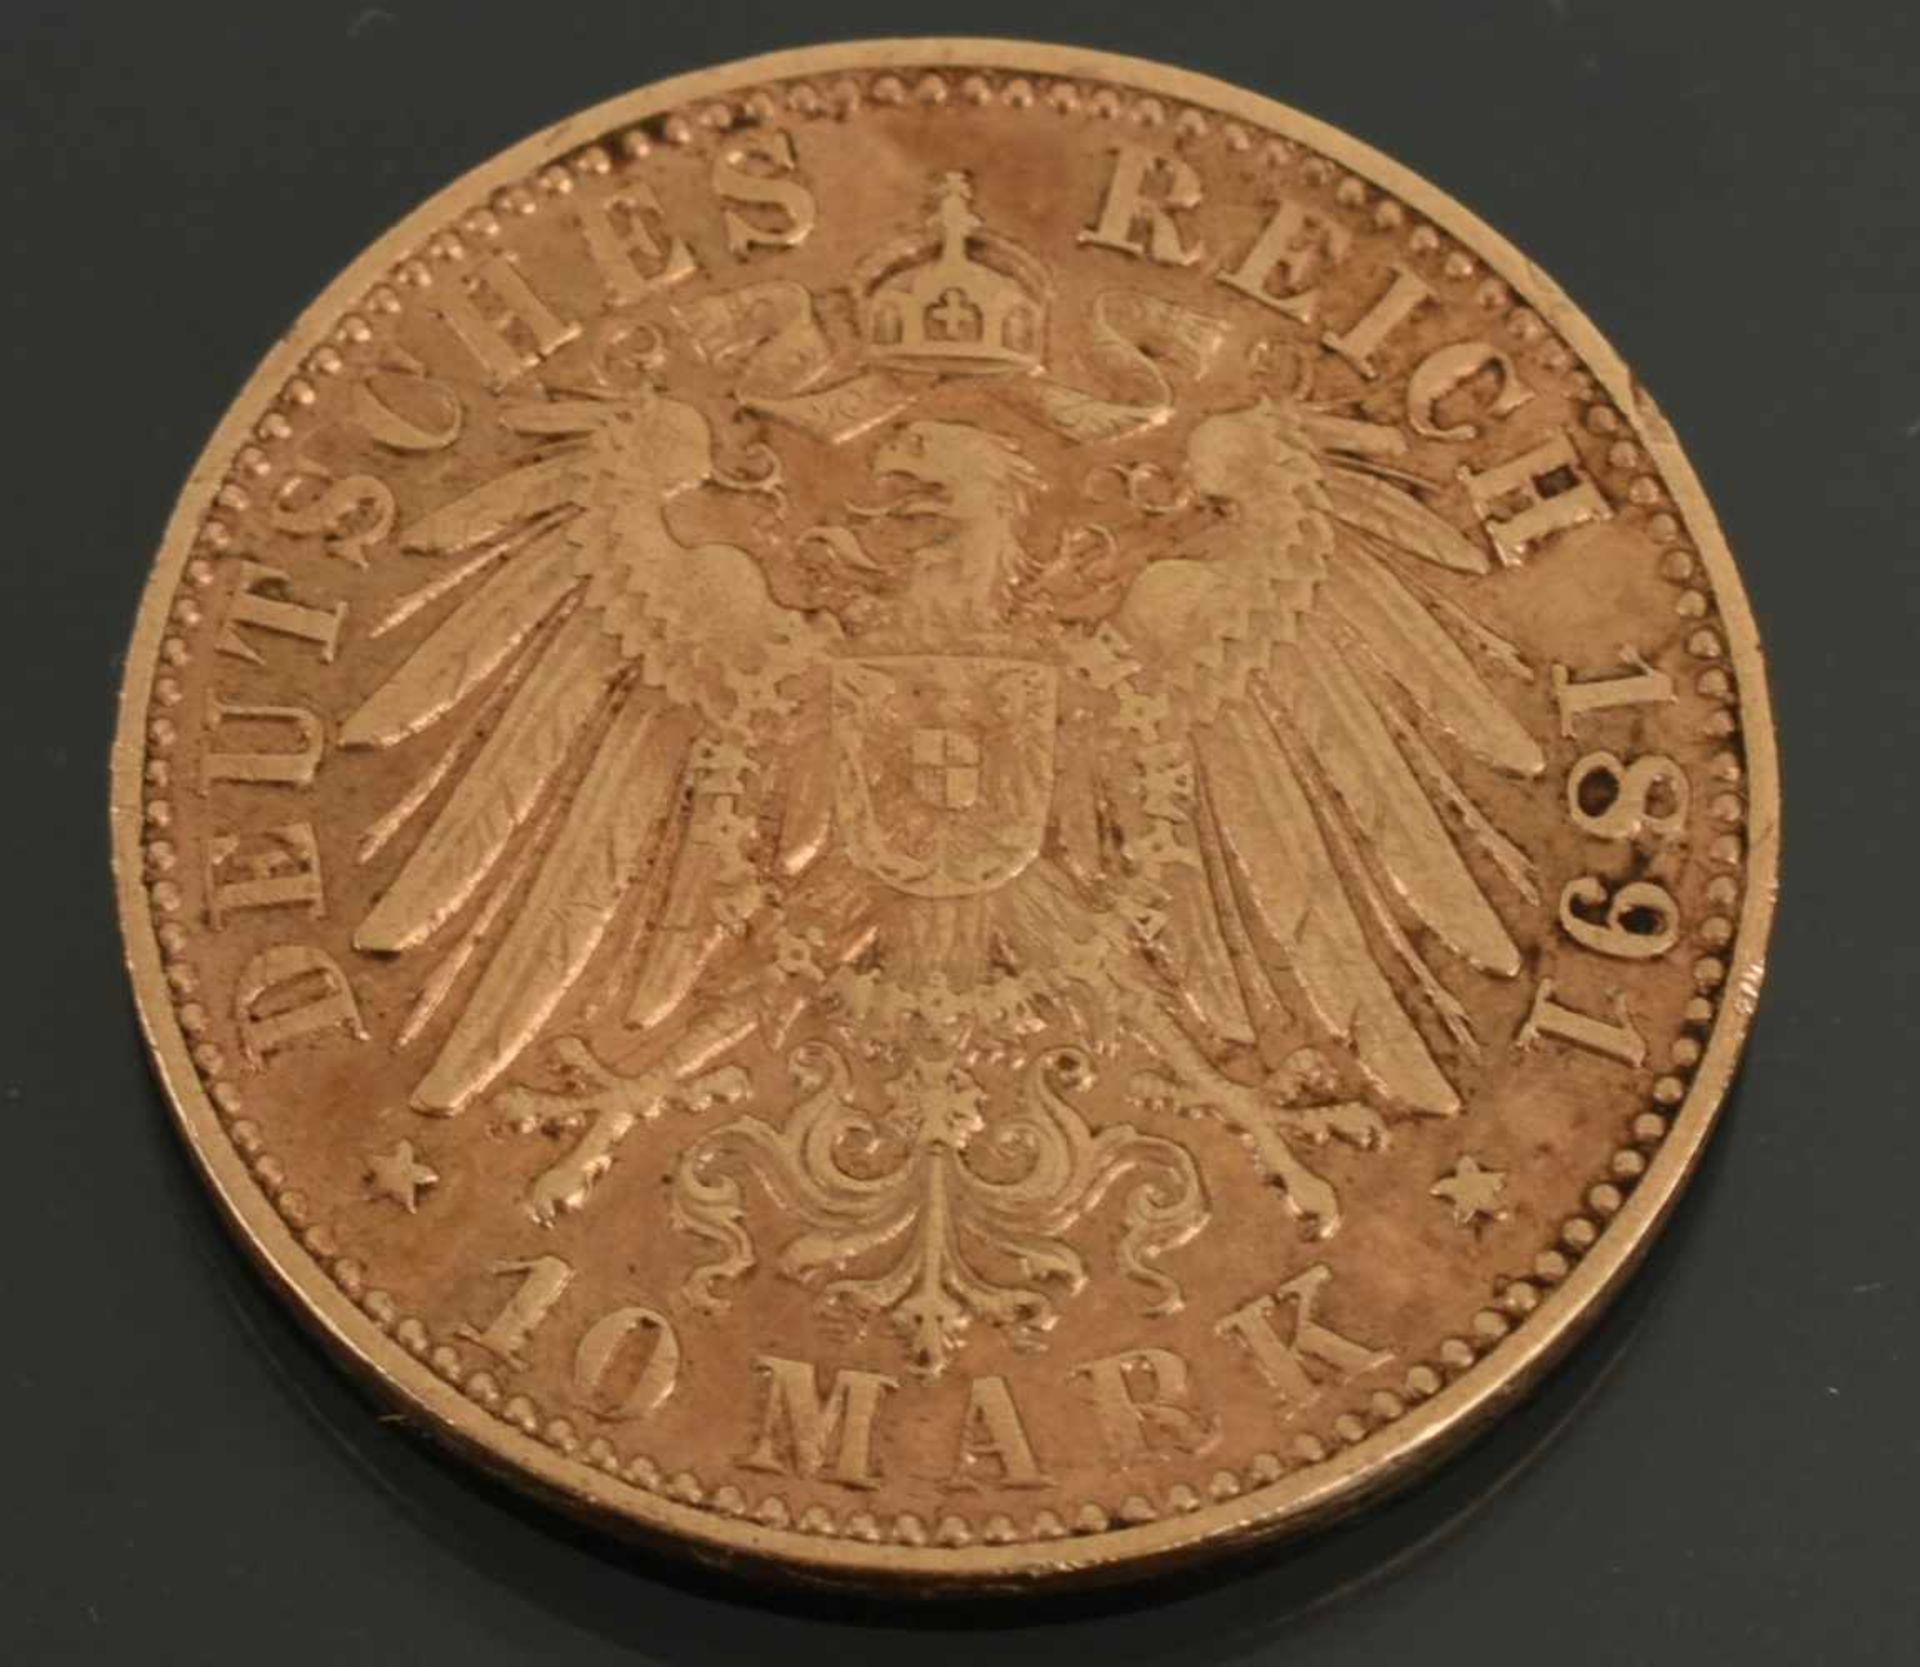 Goldmünze Kaiserreich - Sachsen 1891 10 Mark in Gold, 900/1000, 3,98 g, D ca. 19,5 mm, av. Albert - Bild 3 aus 3